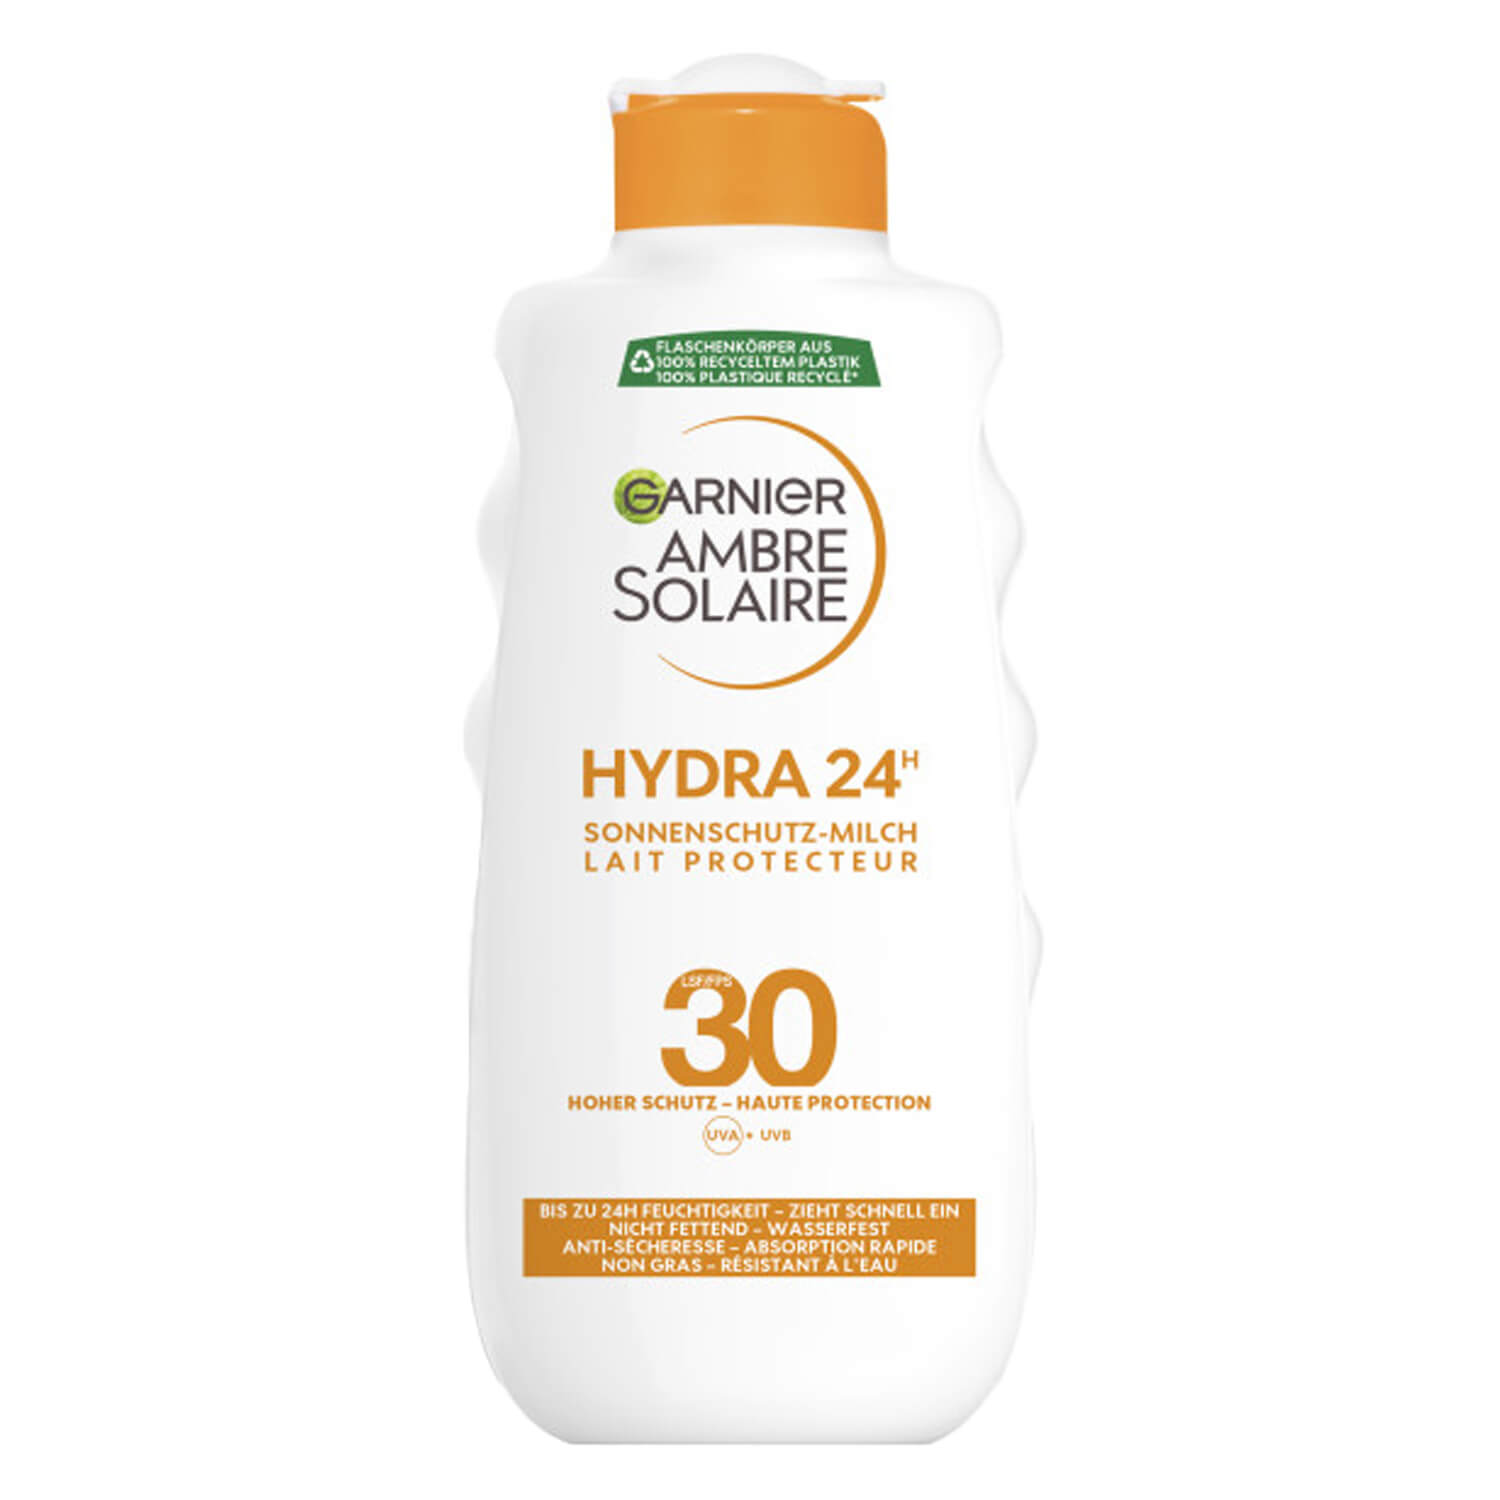 Ambre Solaire SPF20 Protection Sun Milk 24h Hydra 